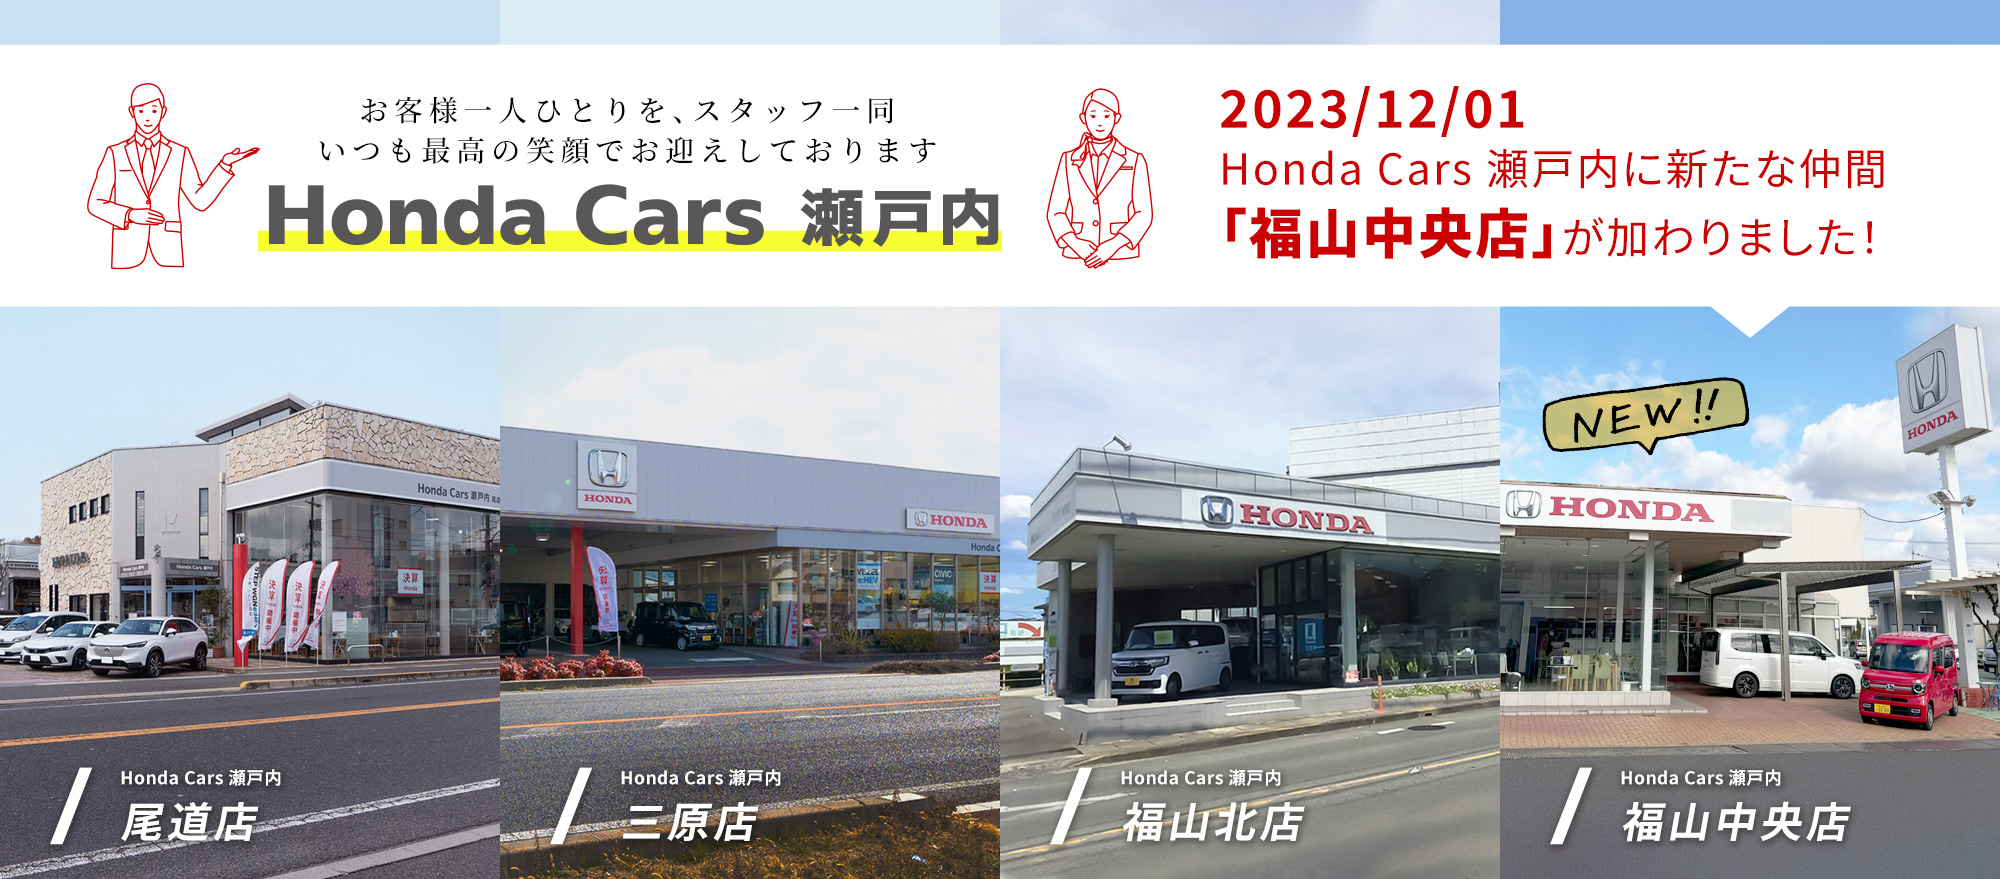 2023/12/01 Honda Cars 瀬戸内に新たな仲間「福山中央店」が加わりました！